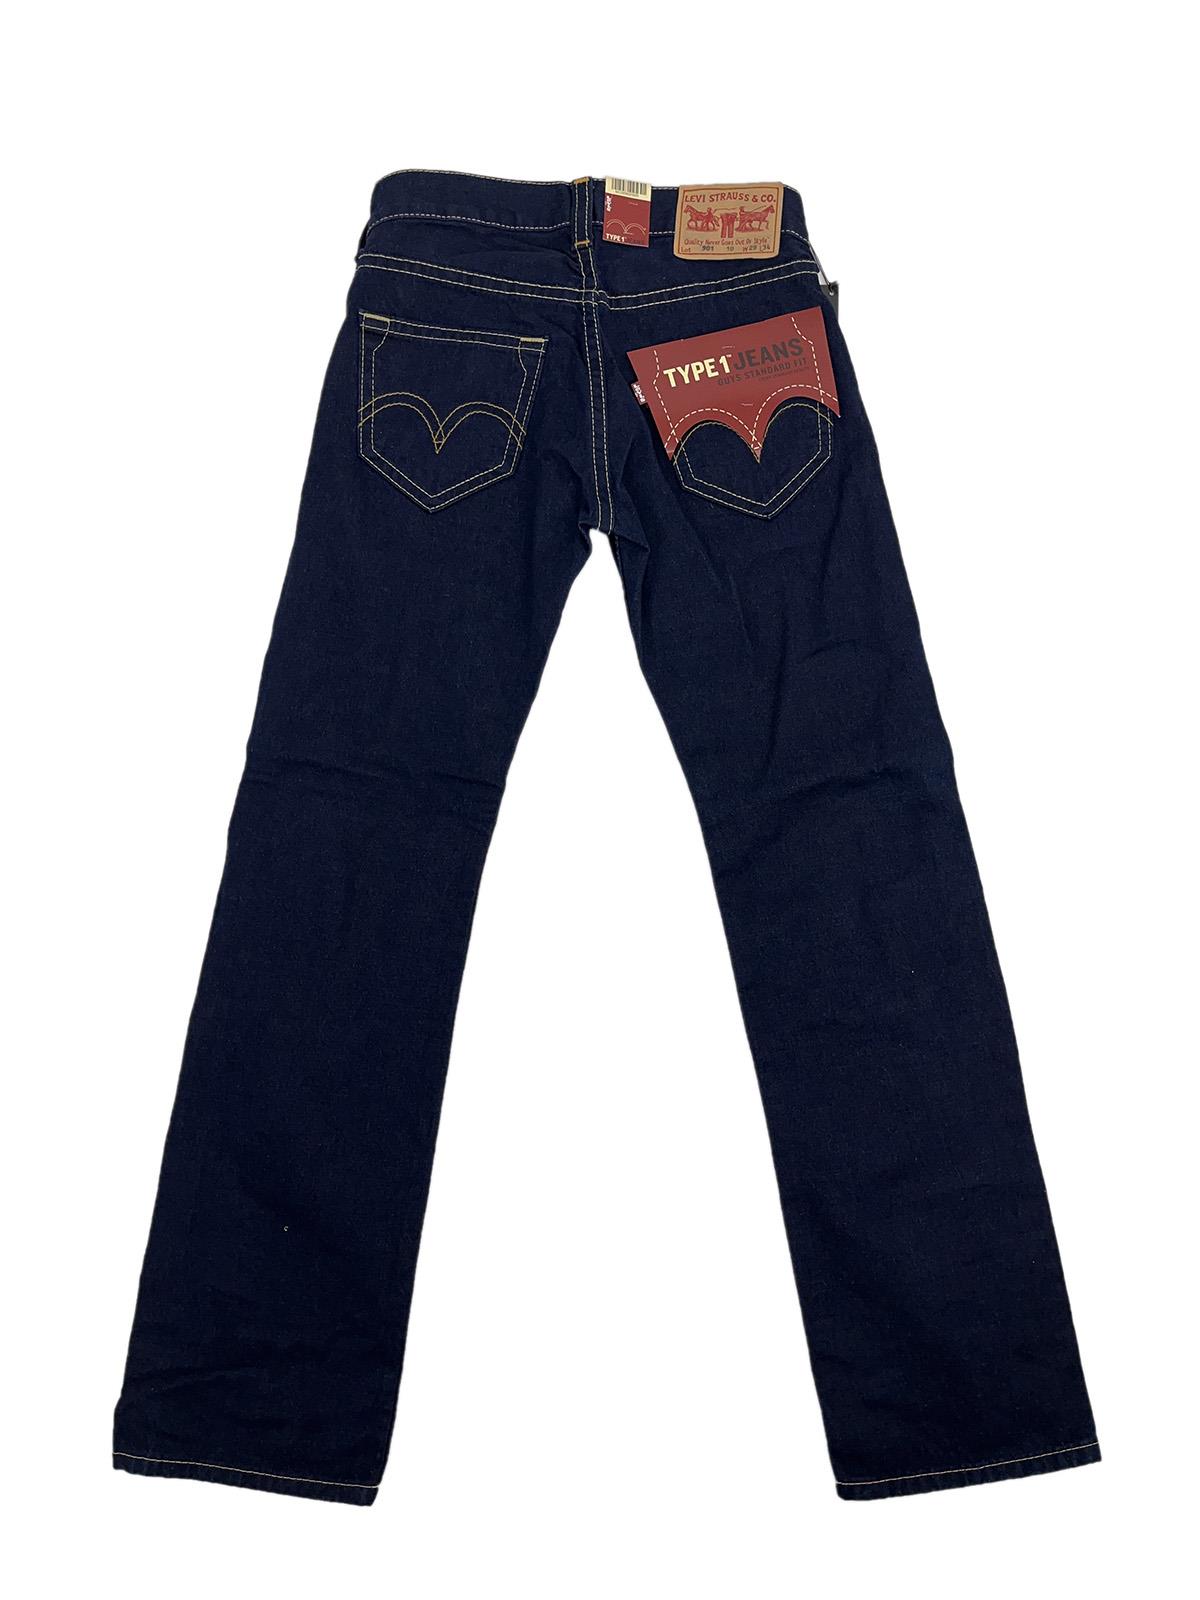 LEVI'S Type 1 00901 Jeans